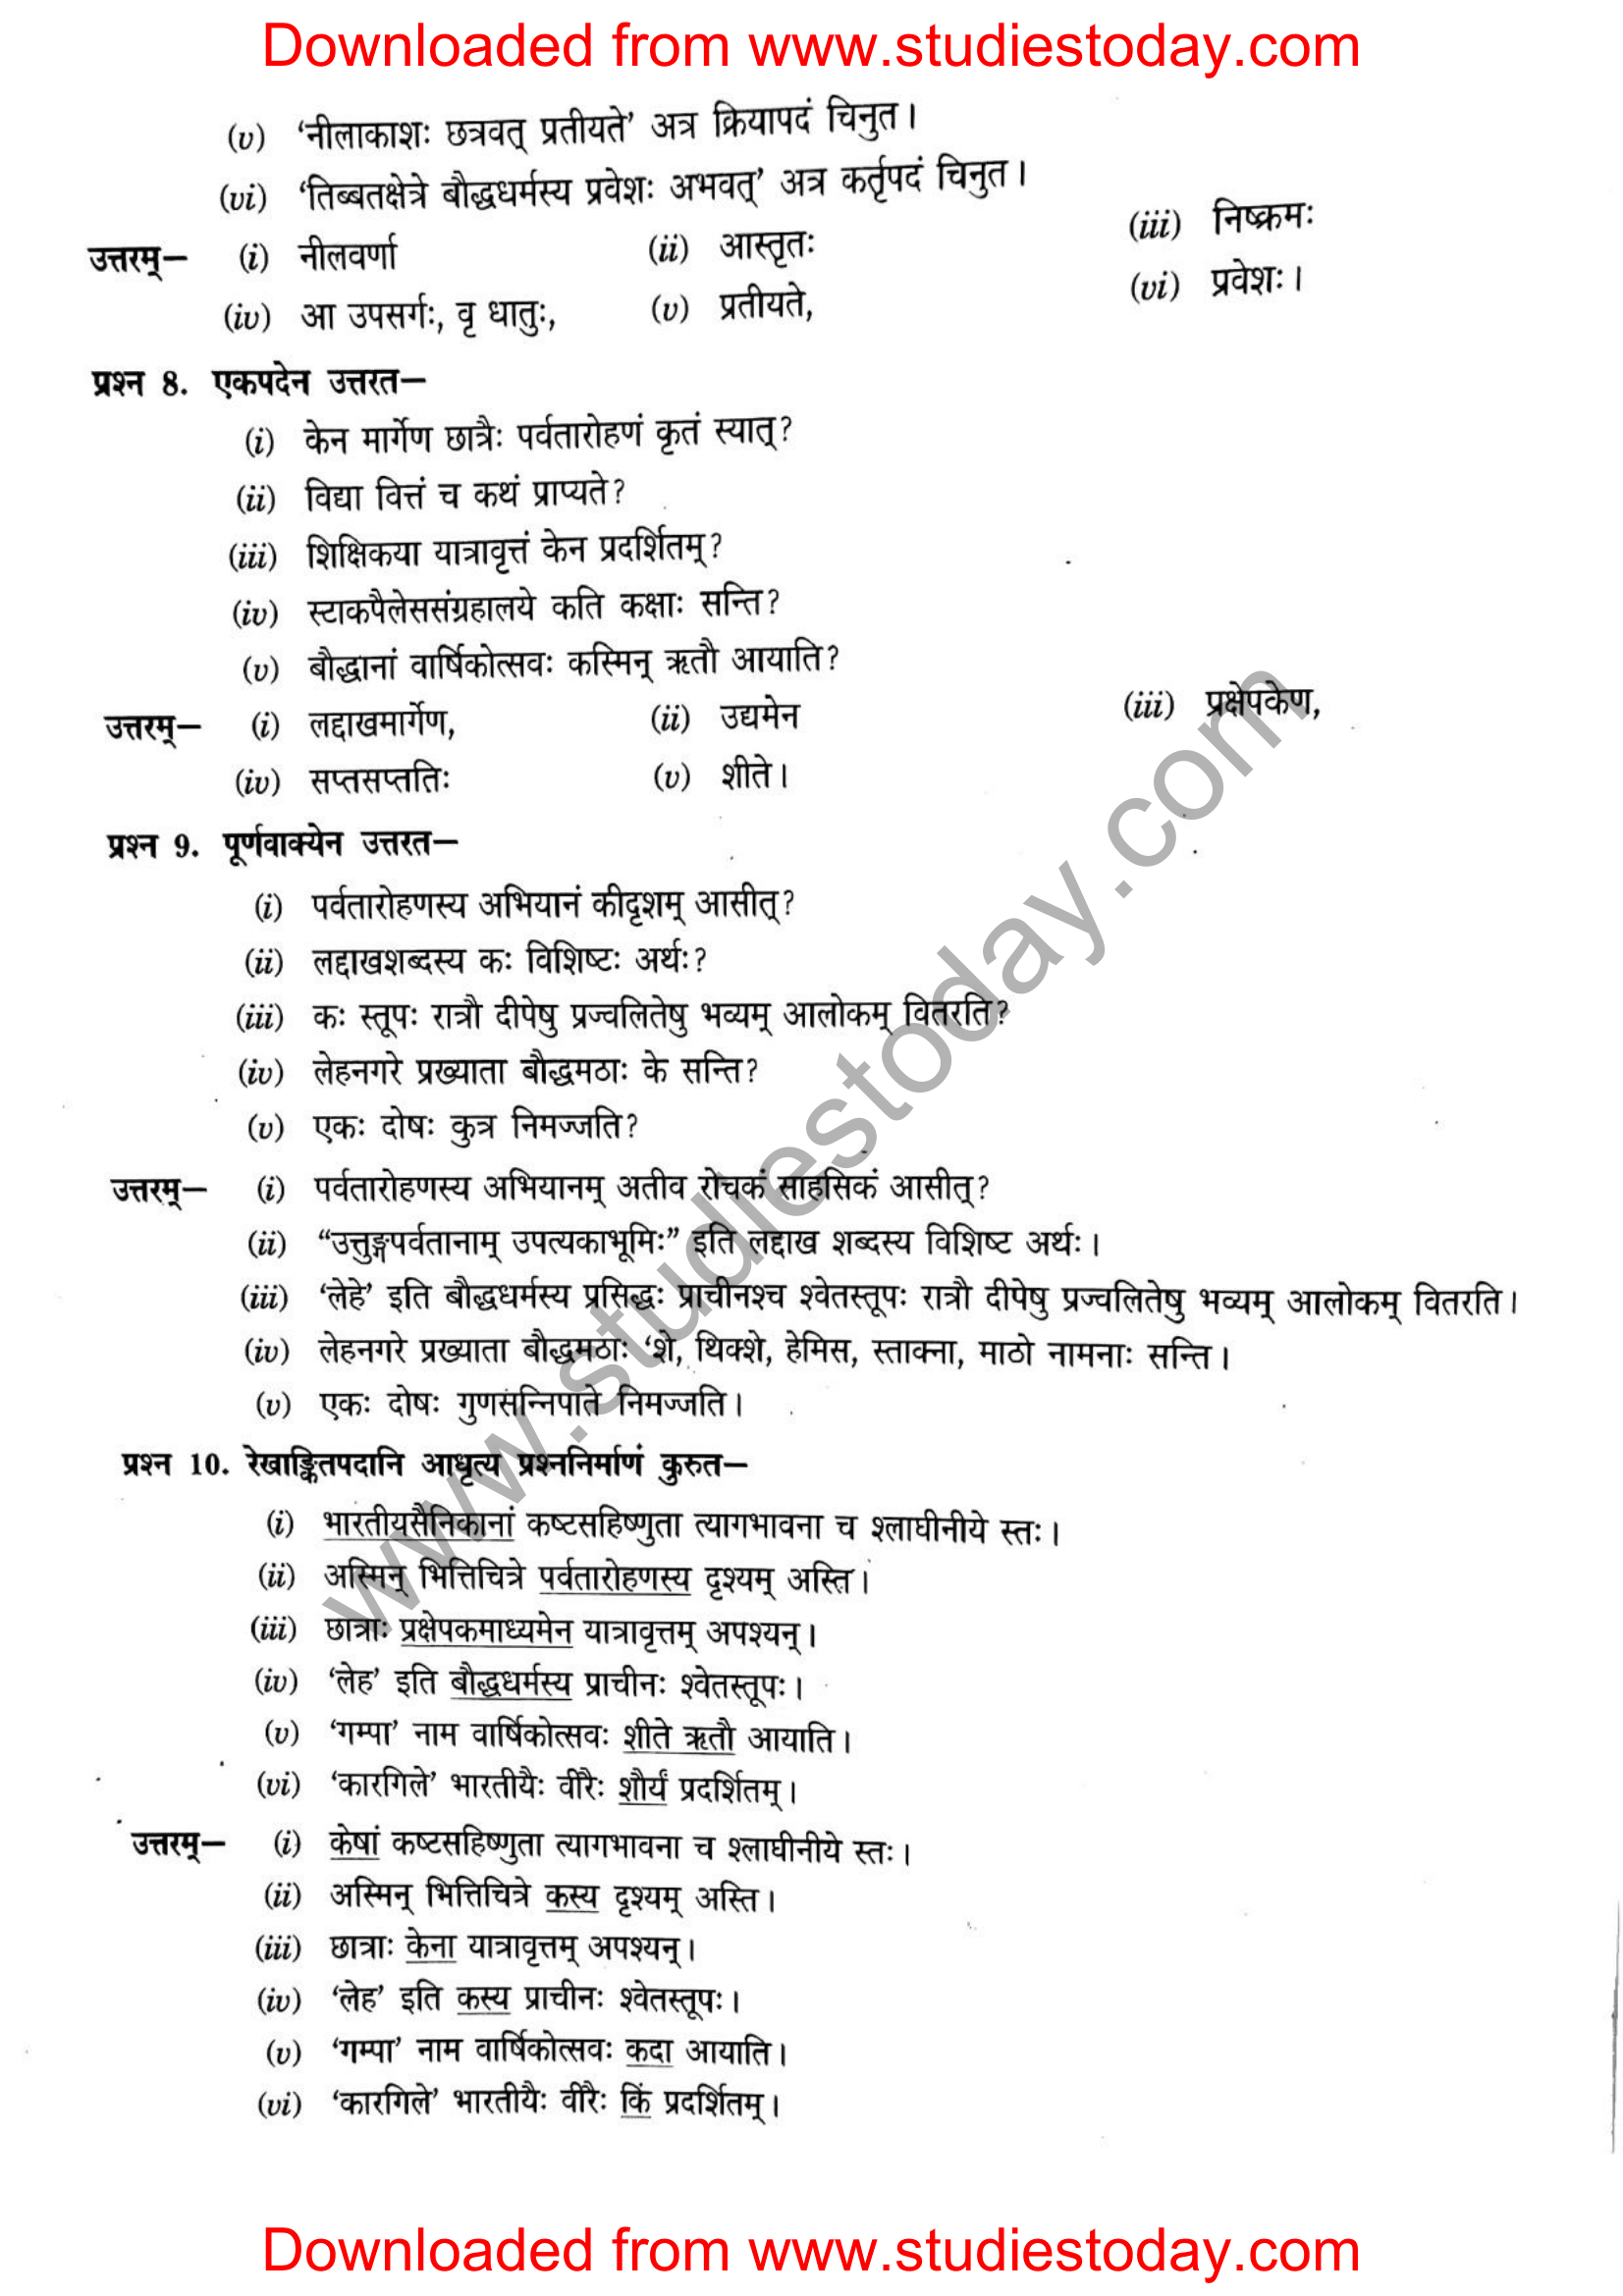 ncert-solutions-class-12-sanskrit-ritikia-chapter-5-09